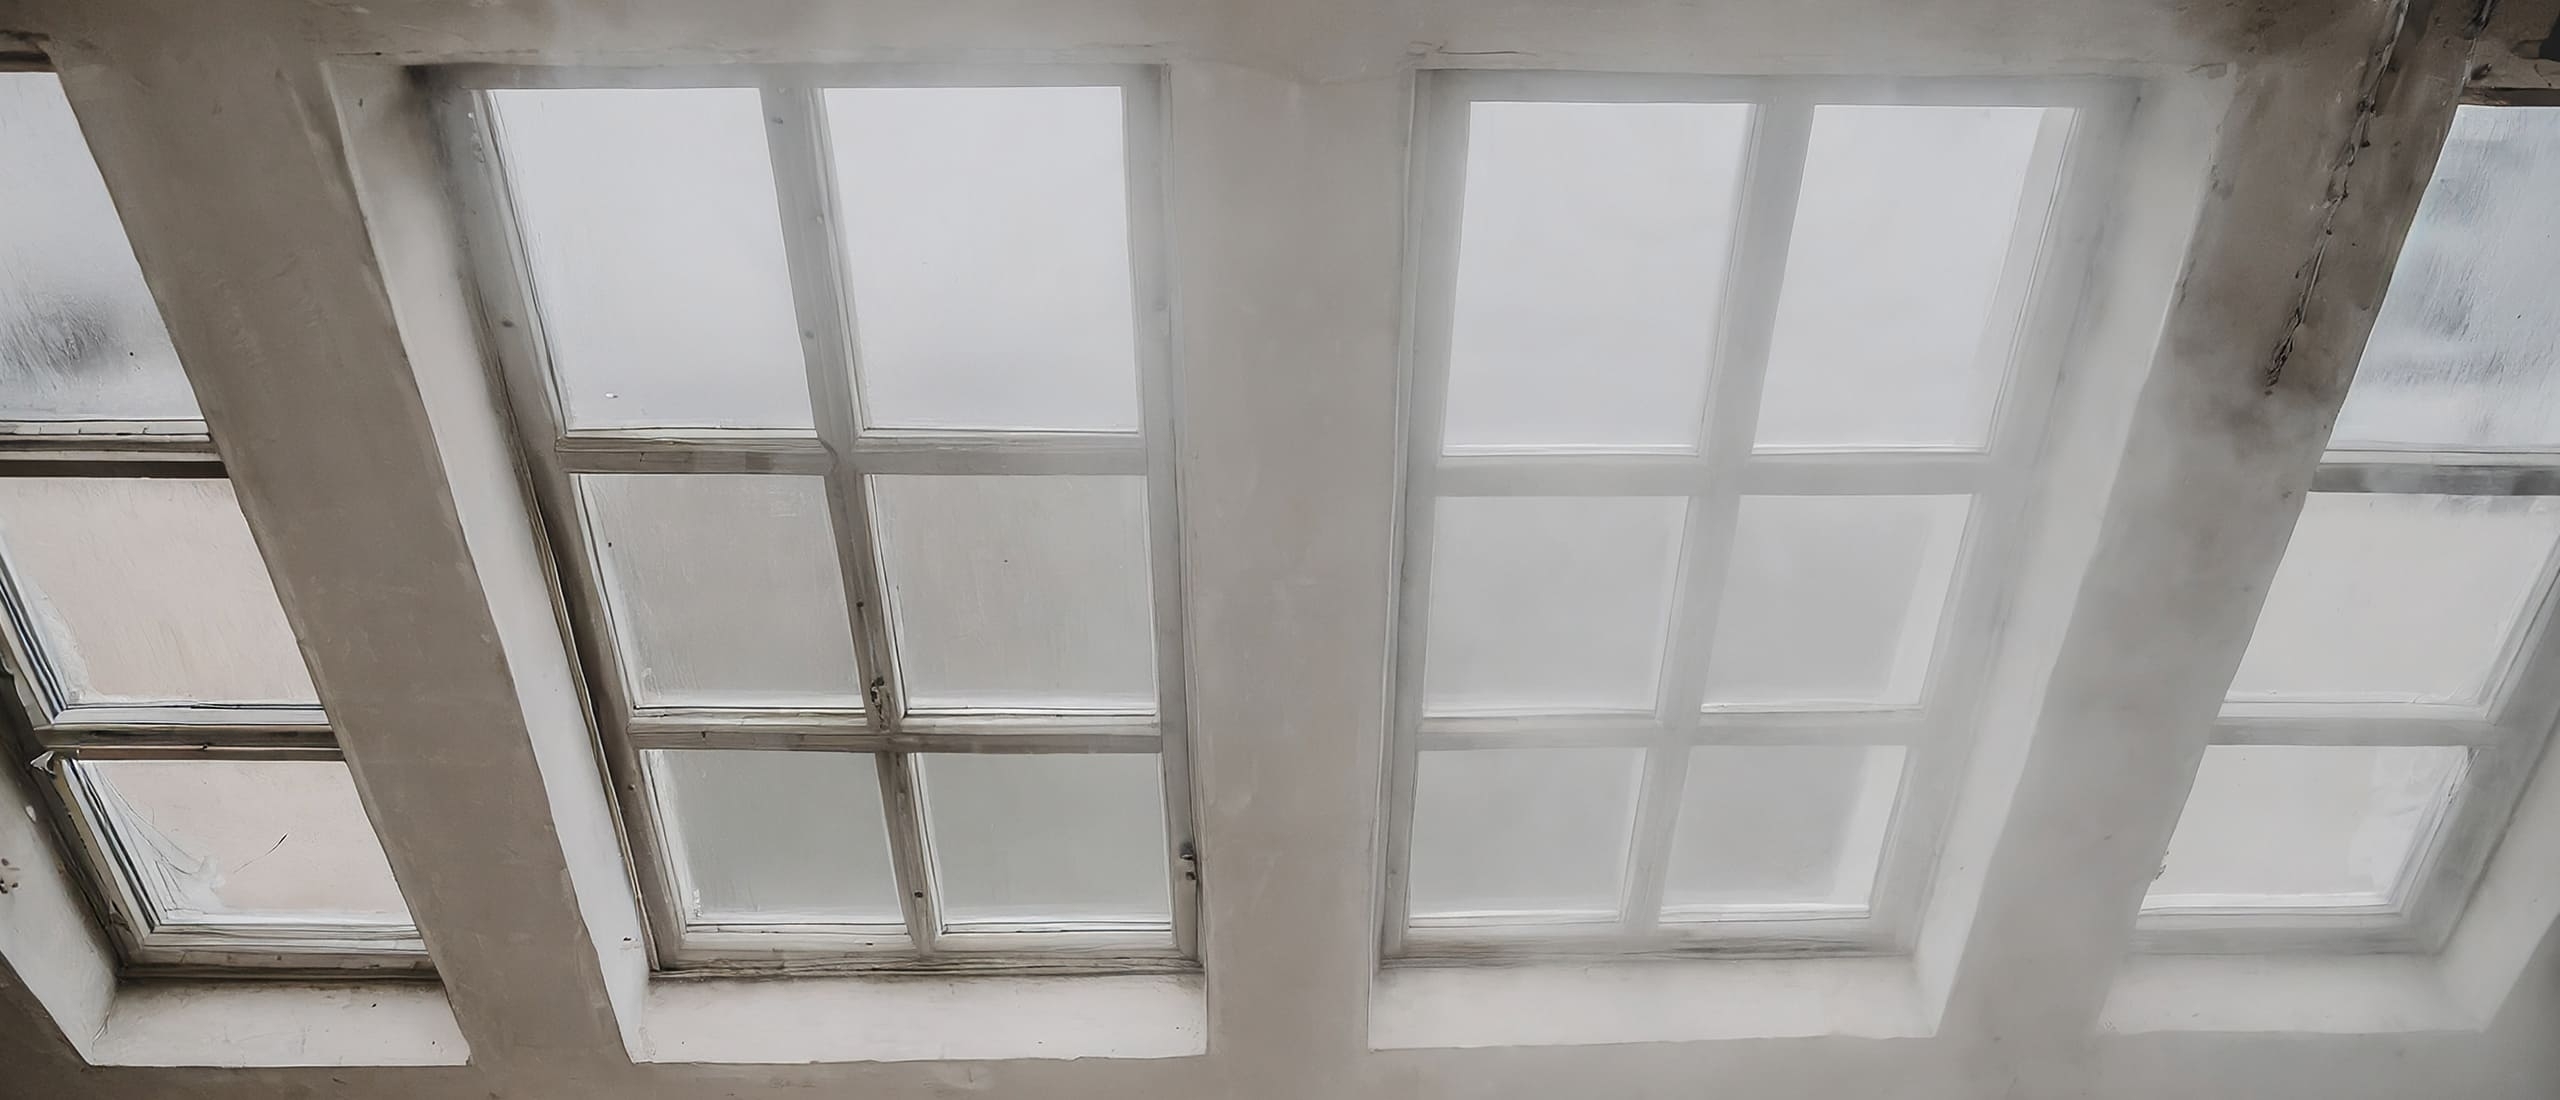 De ramen beslaan aan de binnenkant van het huis